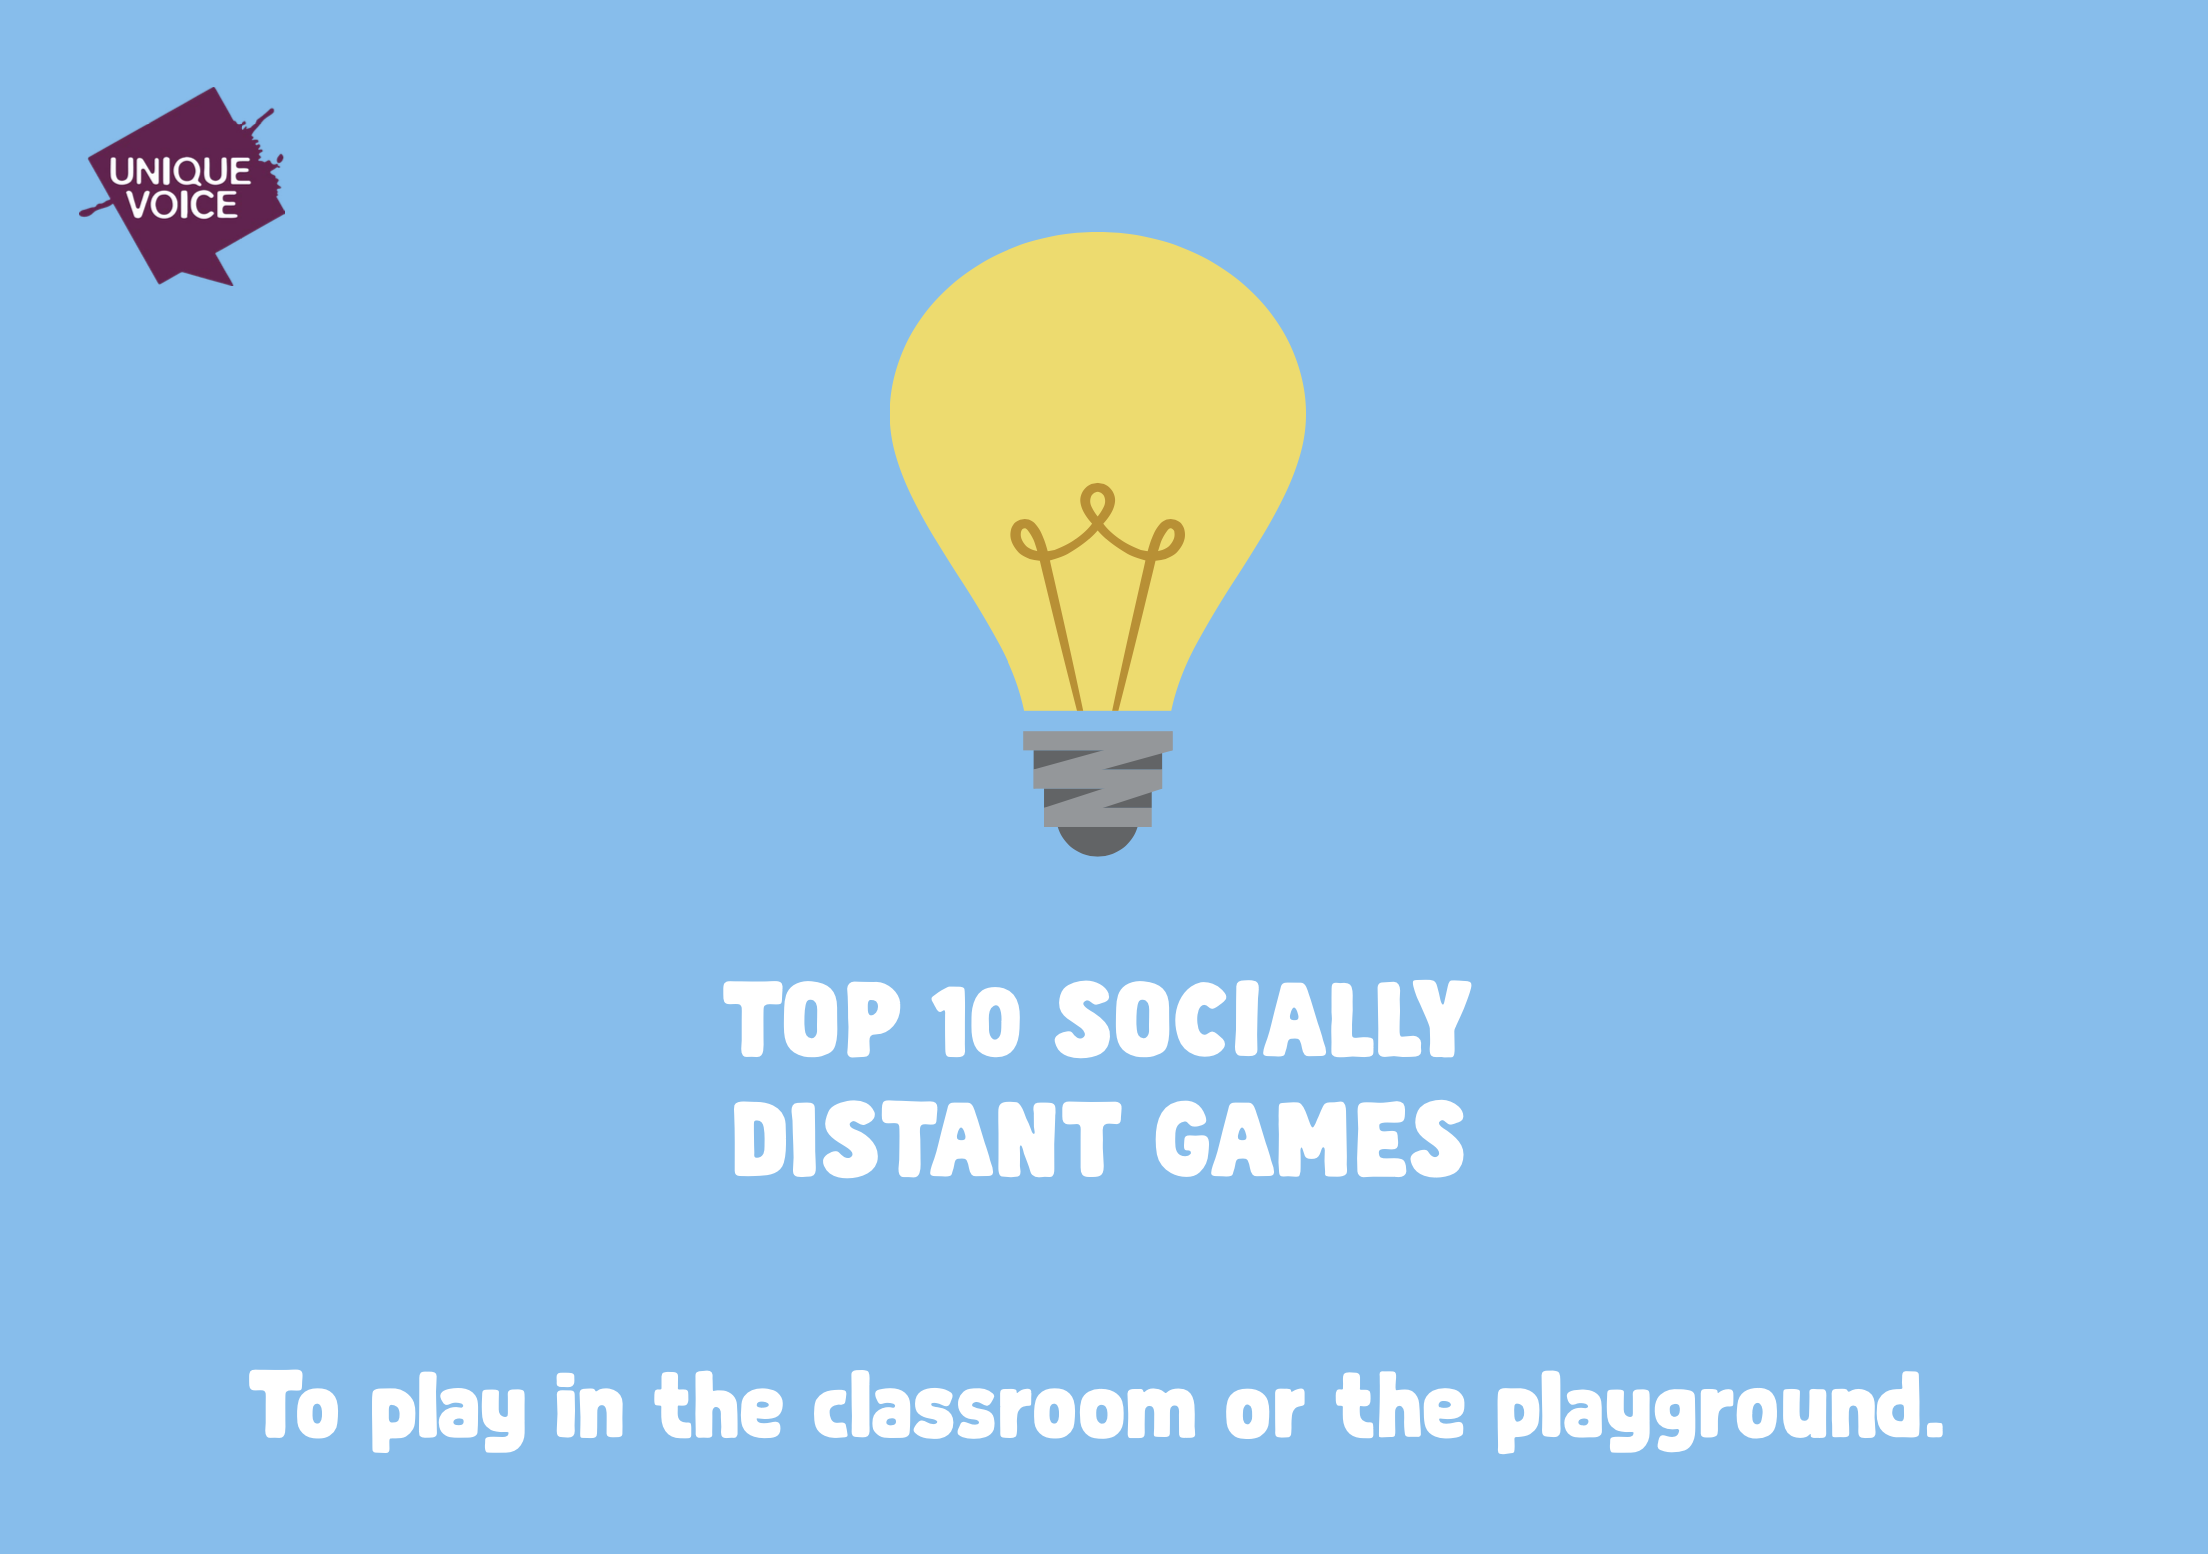 Top 10 Socially Distanced Games